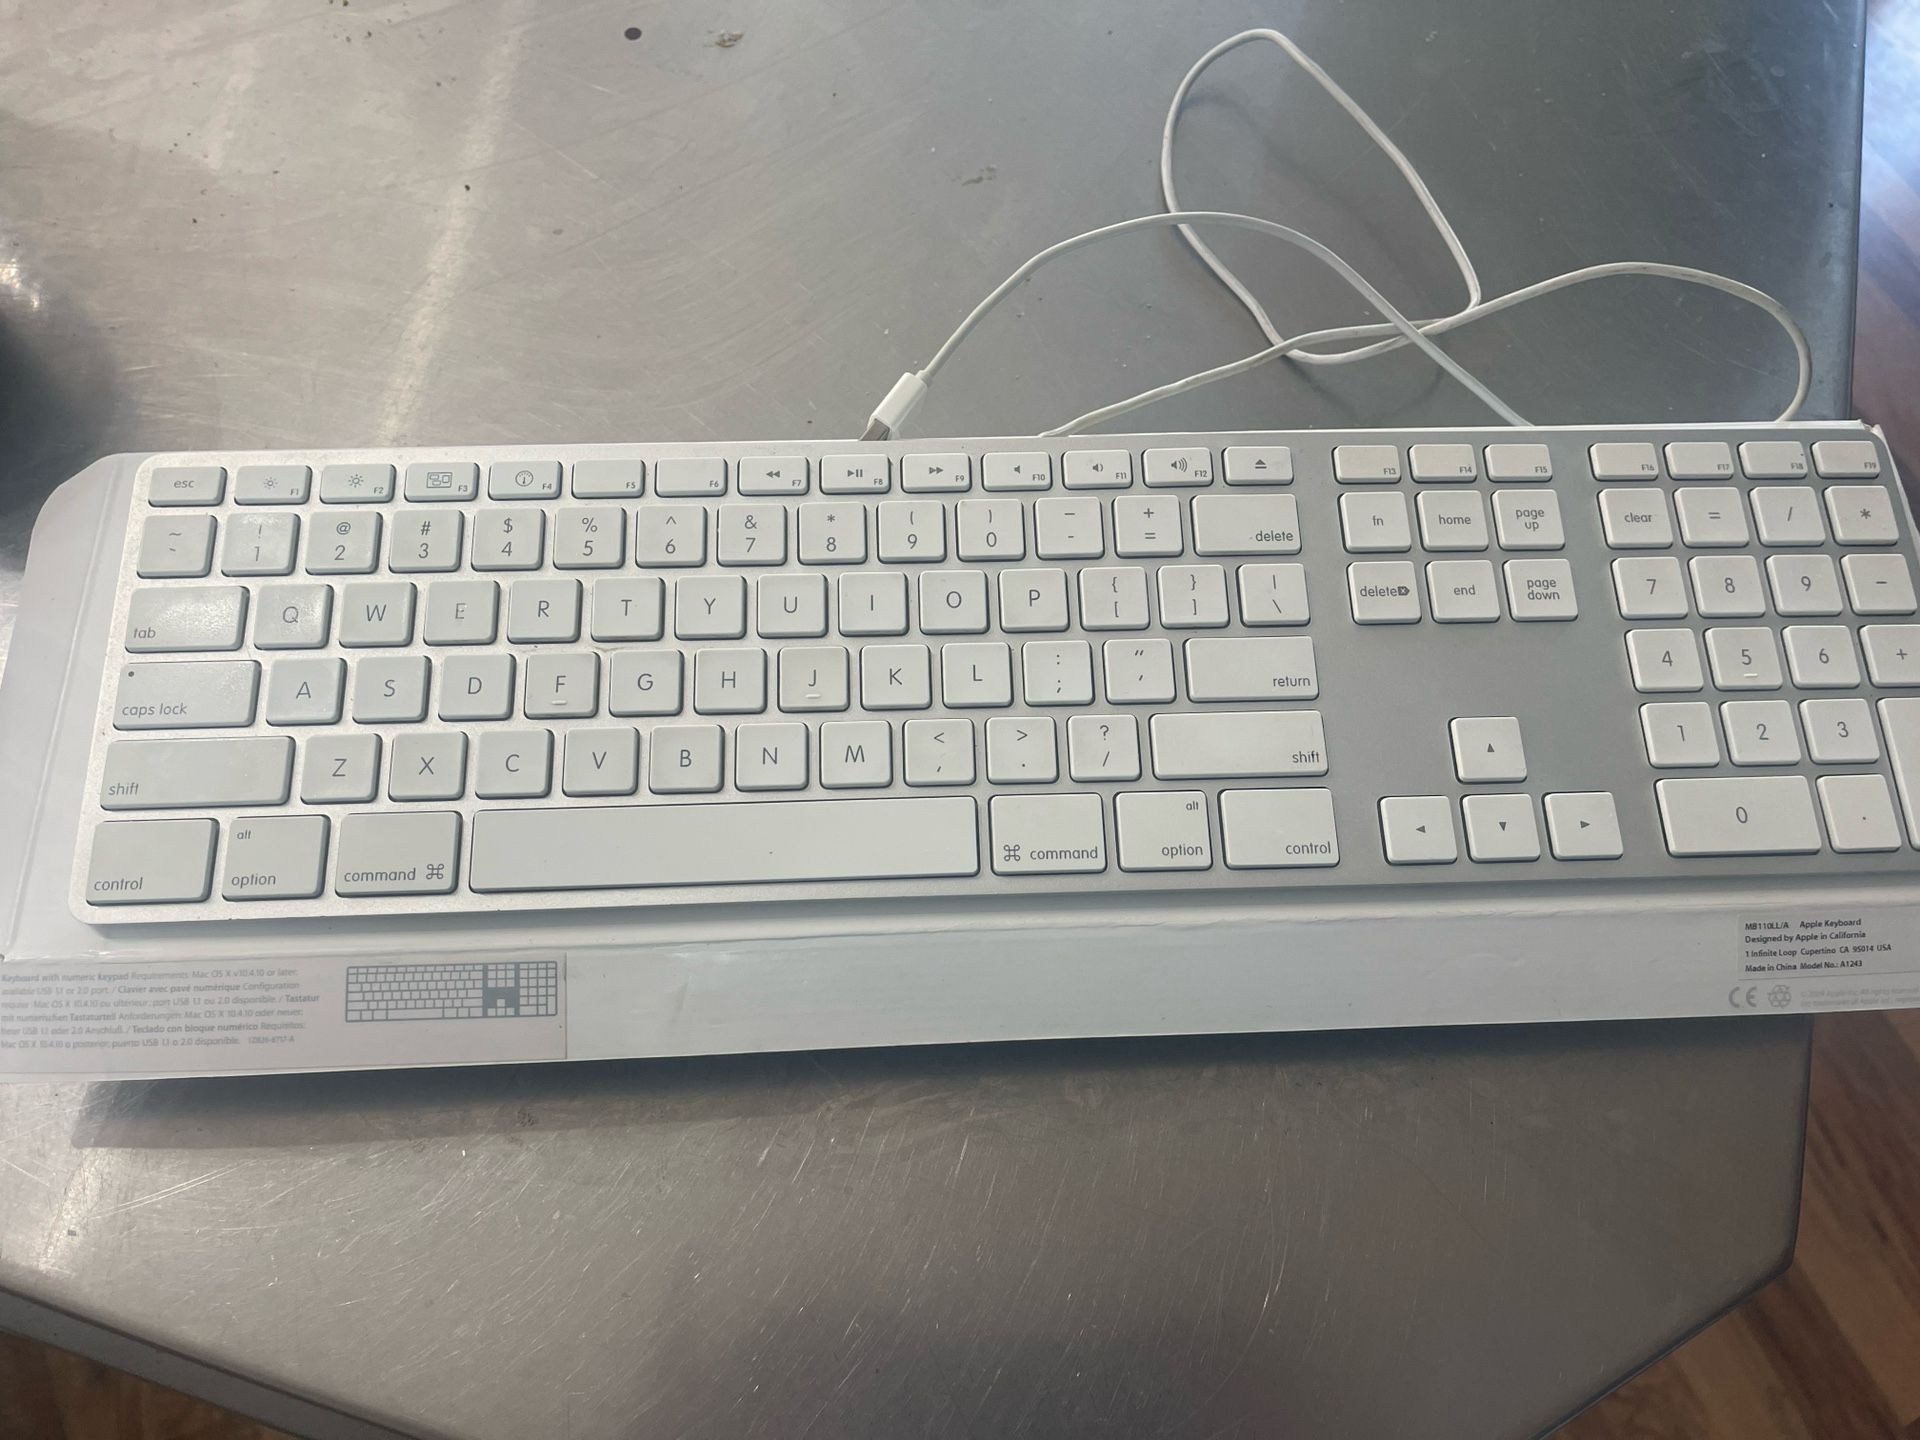 Apple USB Keyboard 